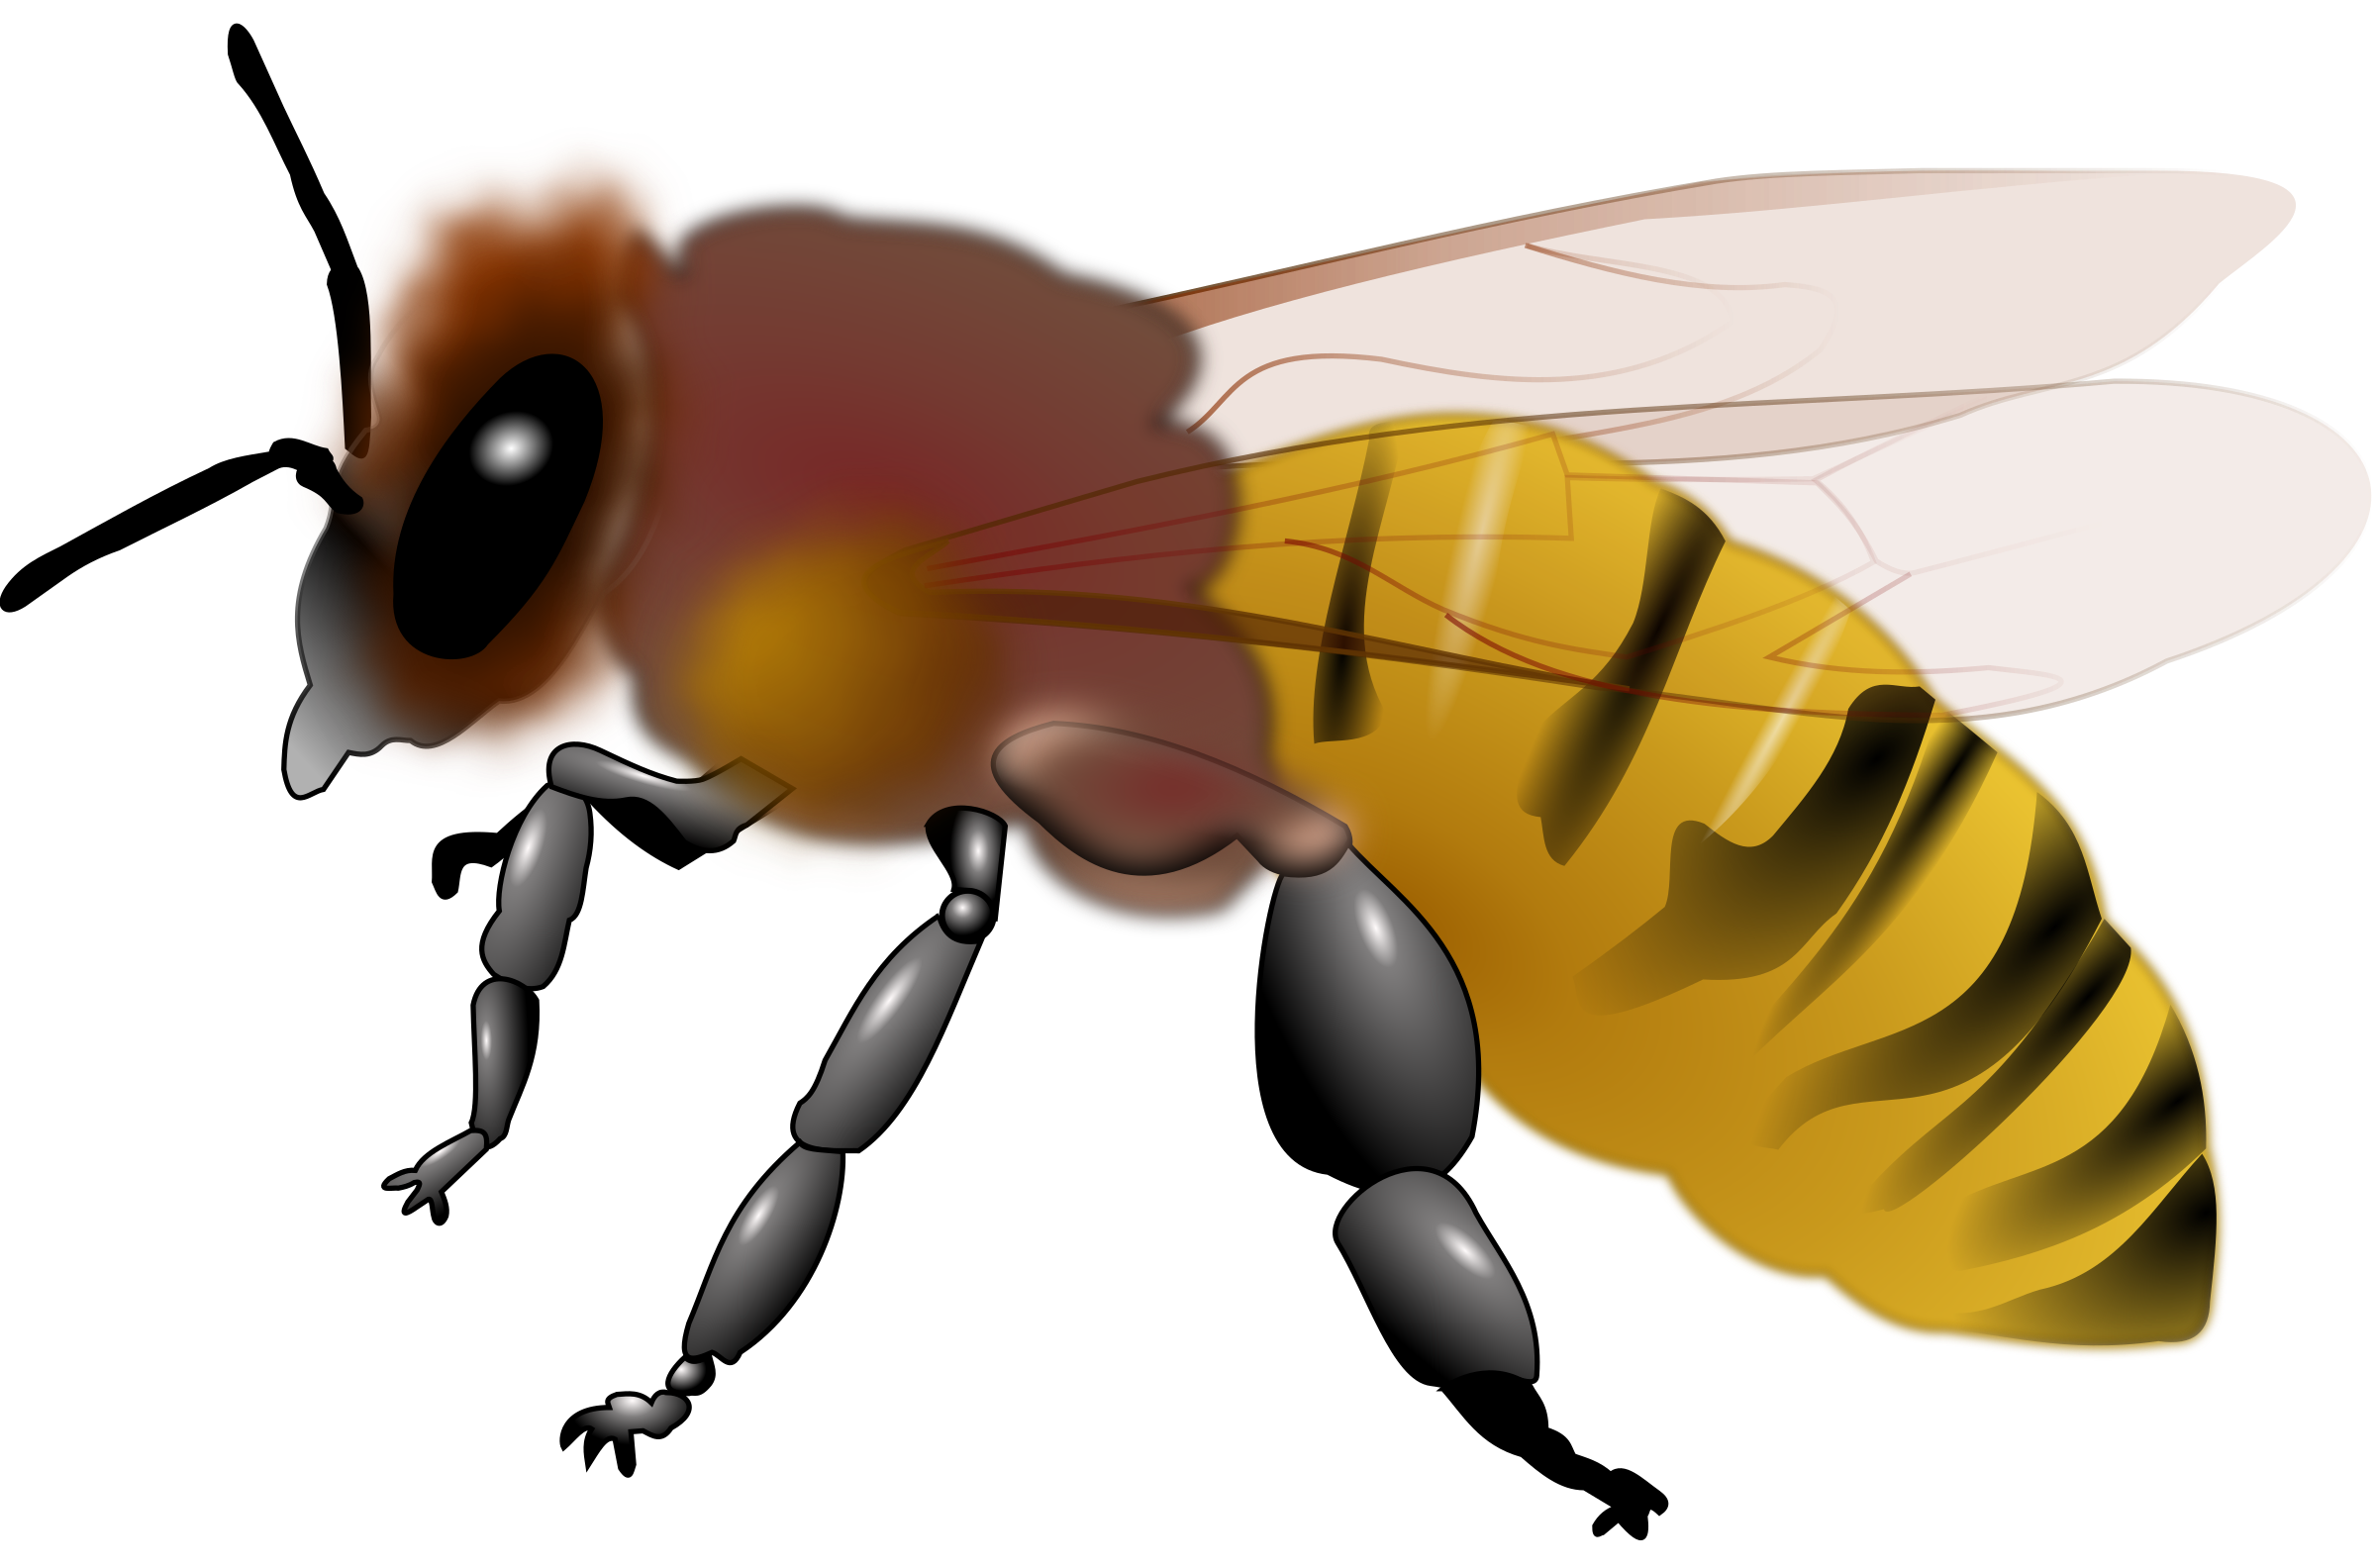 Honeybee big image png. Clipart bee honey bee